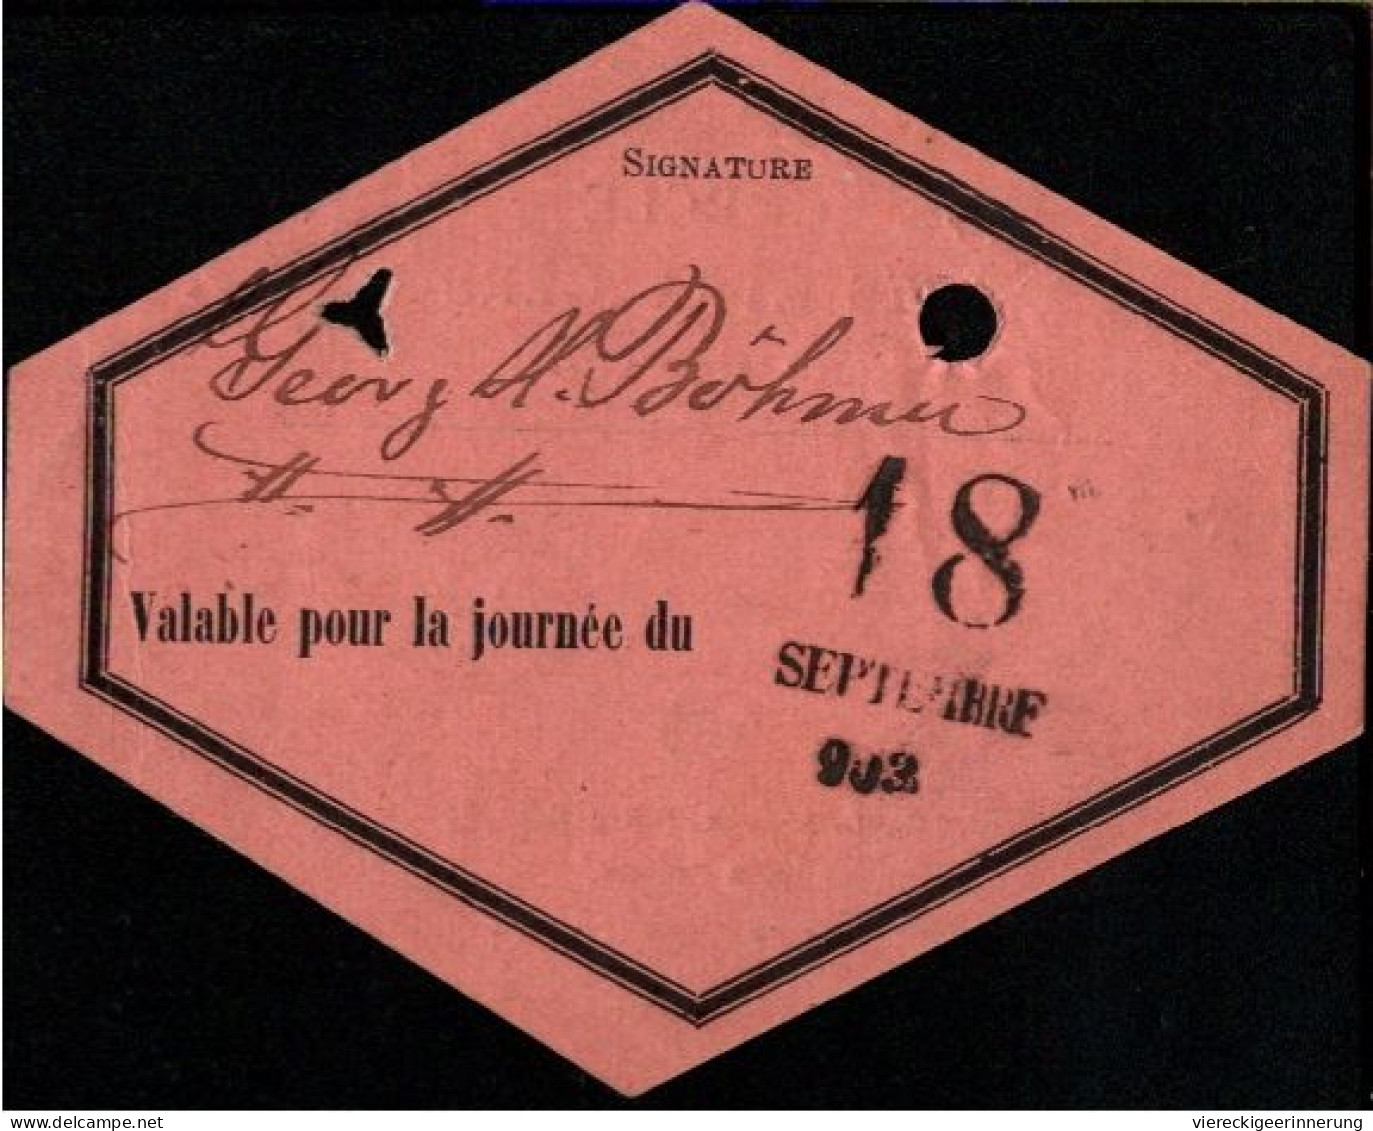 ! 1903 Cercle Des Etrangers De Monaco, Mitgliedskarte, Ausweis - Lettres & Documents